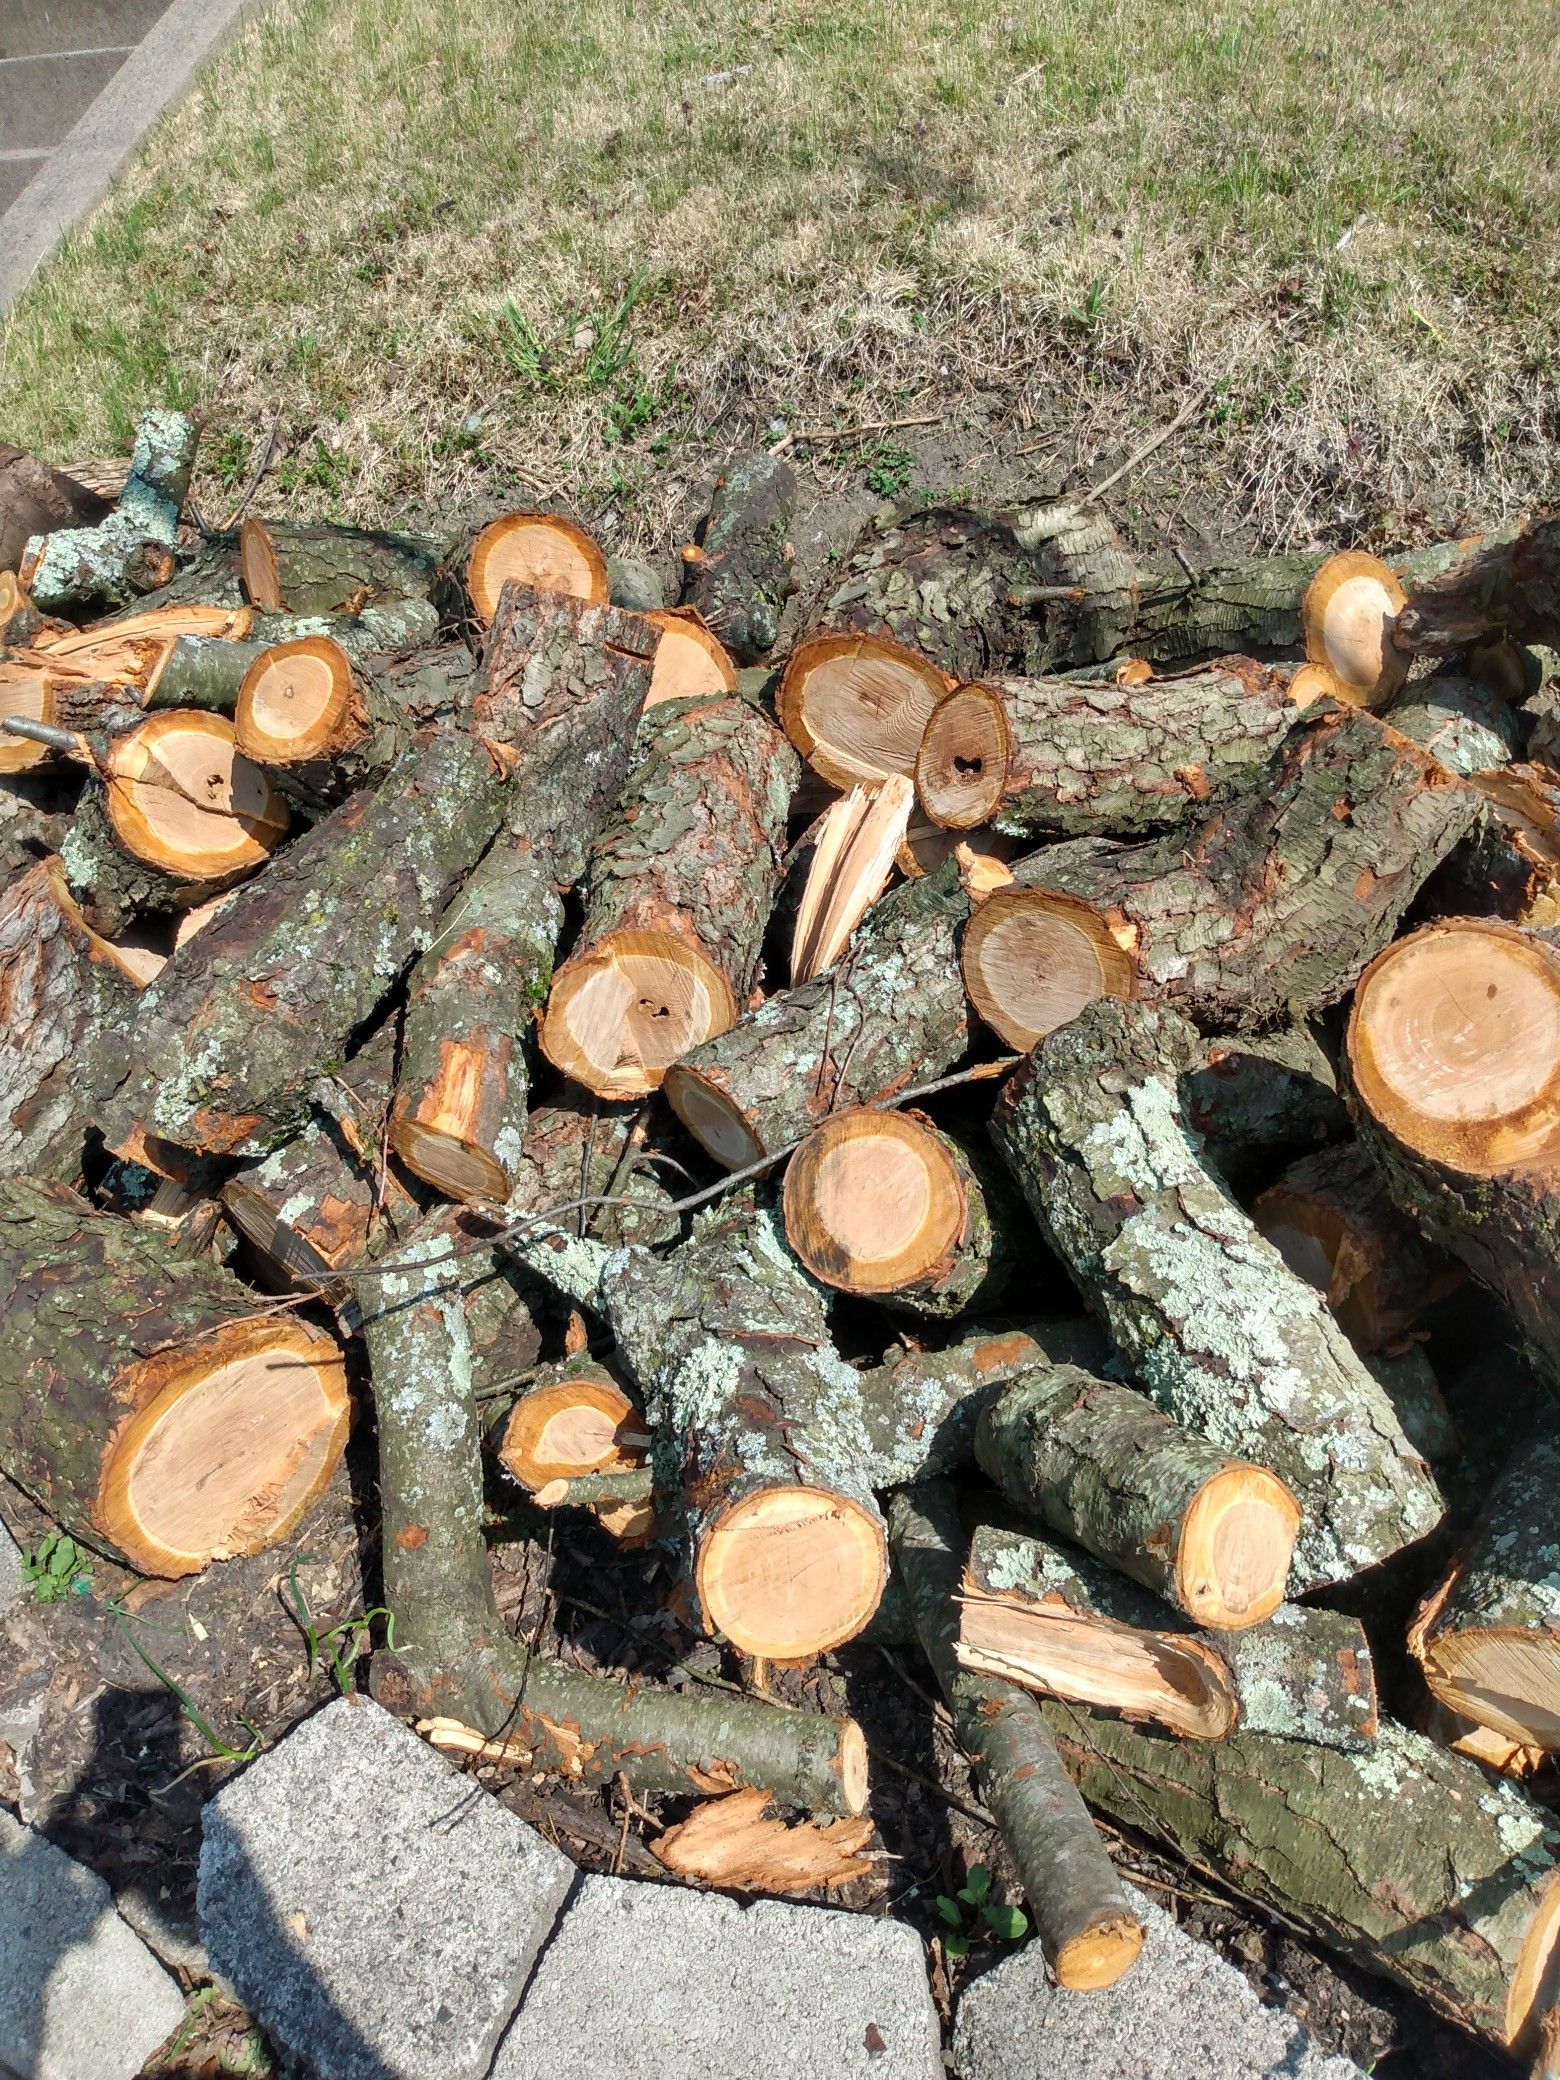 Cherrywood logs